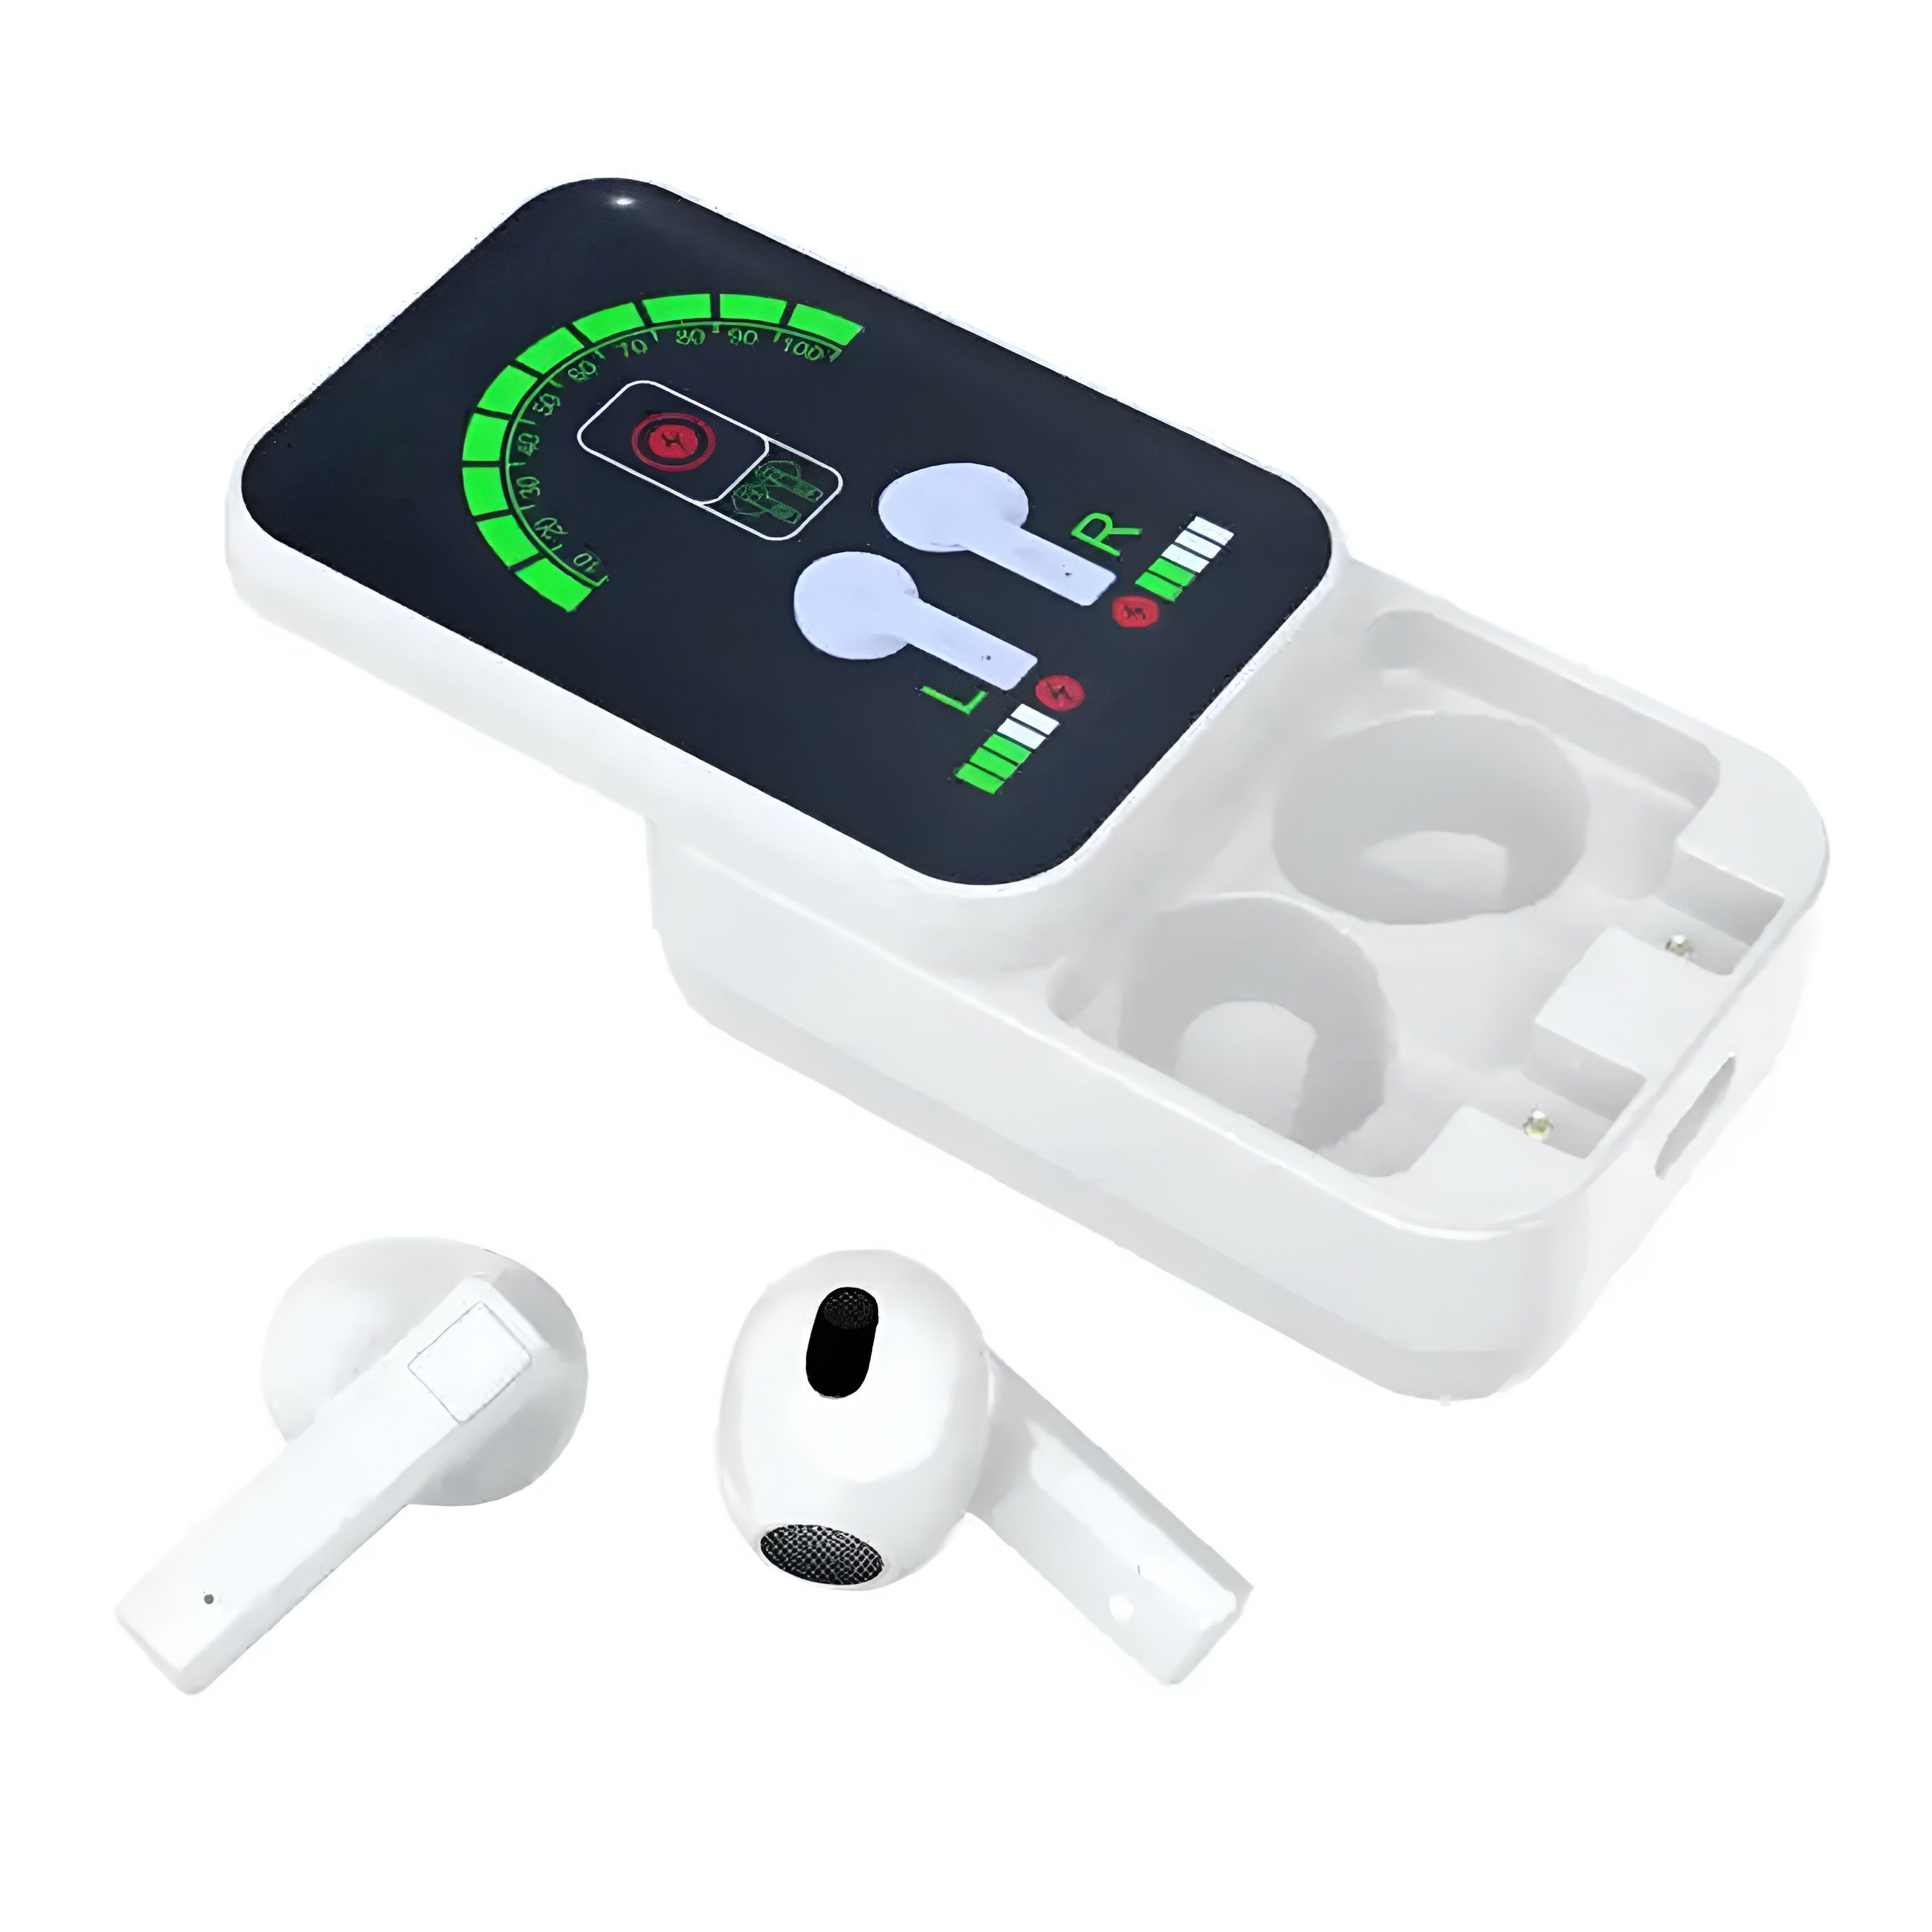 Sound IPX-5 PRO Geräusch-Annullierung, Bluetooth-Kopfhörer Qualität Premium Design, TWS LED-Anzeige, Ear Apple Wasserdicht, Wahre HD Komfortables Ohrhörer wireless Kabellose Headset Led-anzeige, LED Siri-Unterstützung, stereo, (Mikrofon, In